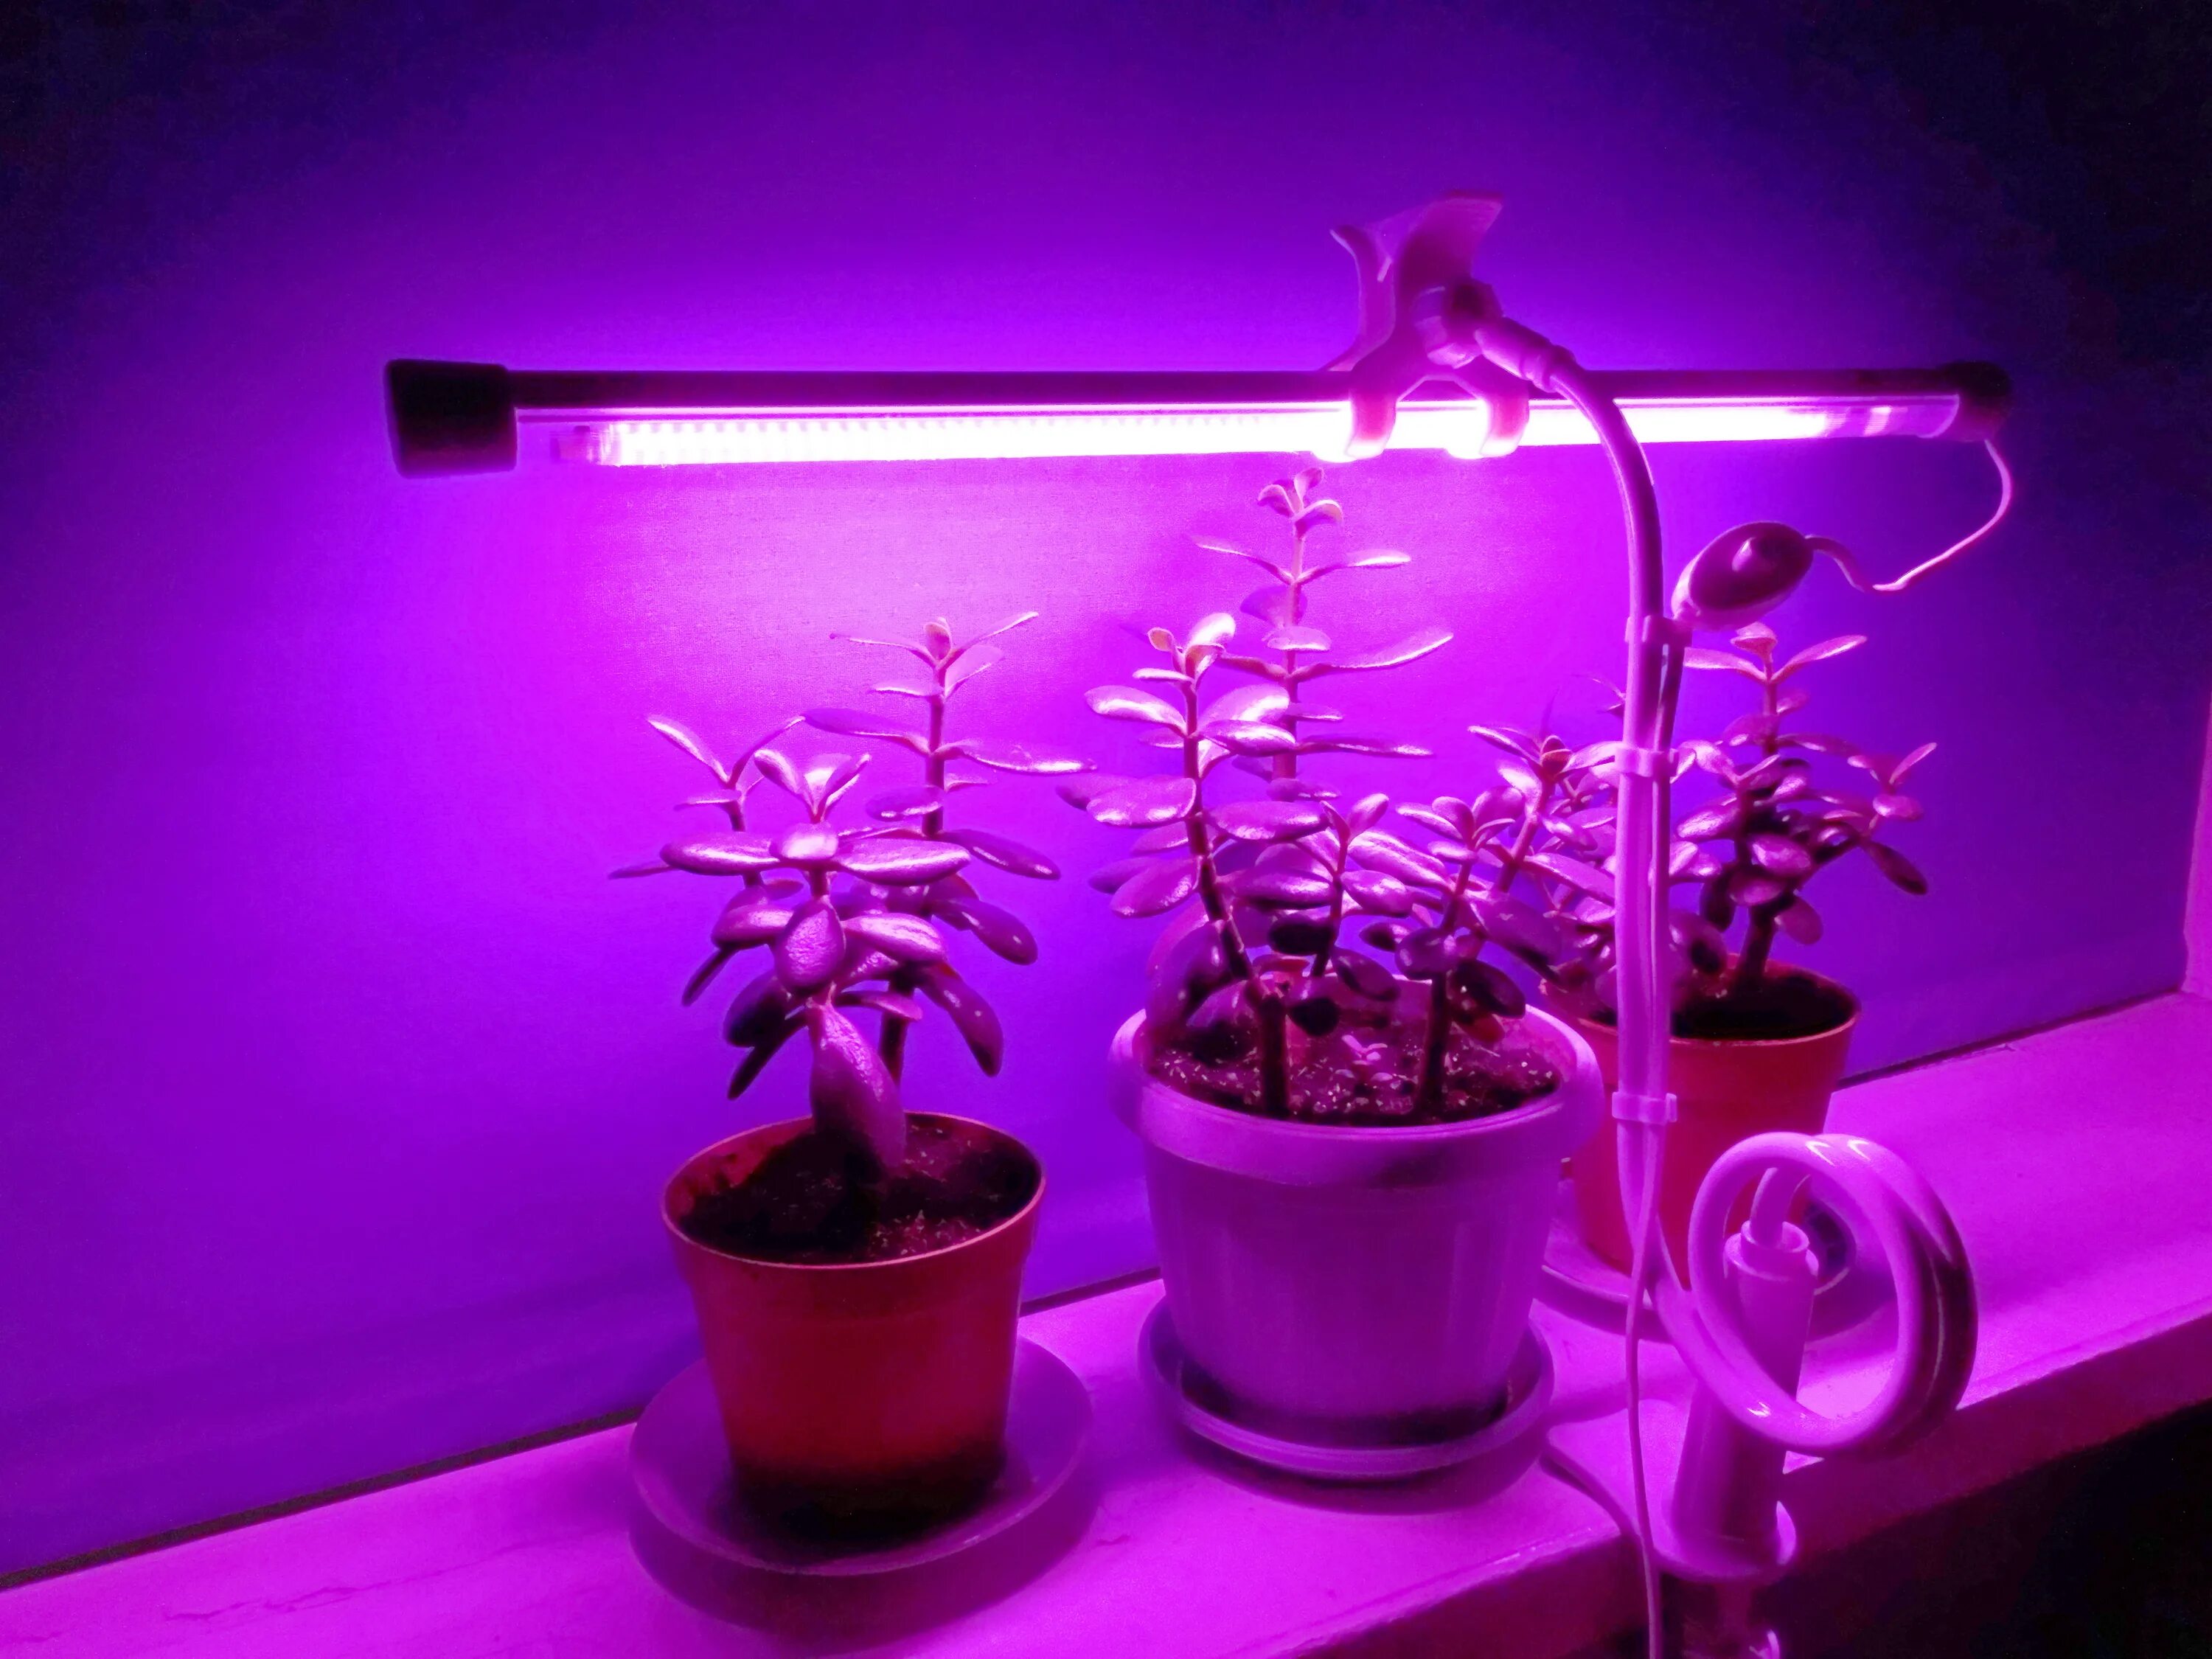 Фито светильник для растений. "Полный спектр - 20 ватт". Фитосветильник «растущий светильник фито f1 16 Вт». Фитосветильник линейный 10w 567мм VKL VLED-Fito-lt5-10w (фиолетовый спектр). Фитосветильник для растений led 60 см., 10 Вт. Лучшая подсветка для цветов